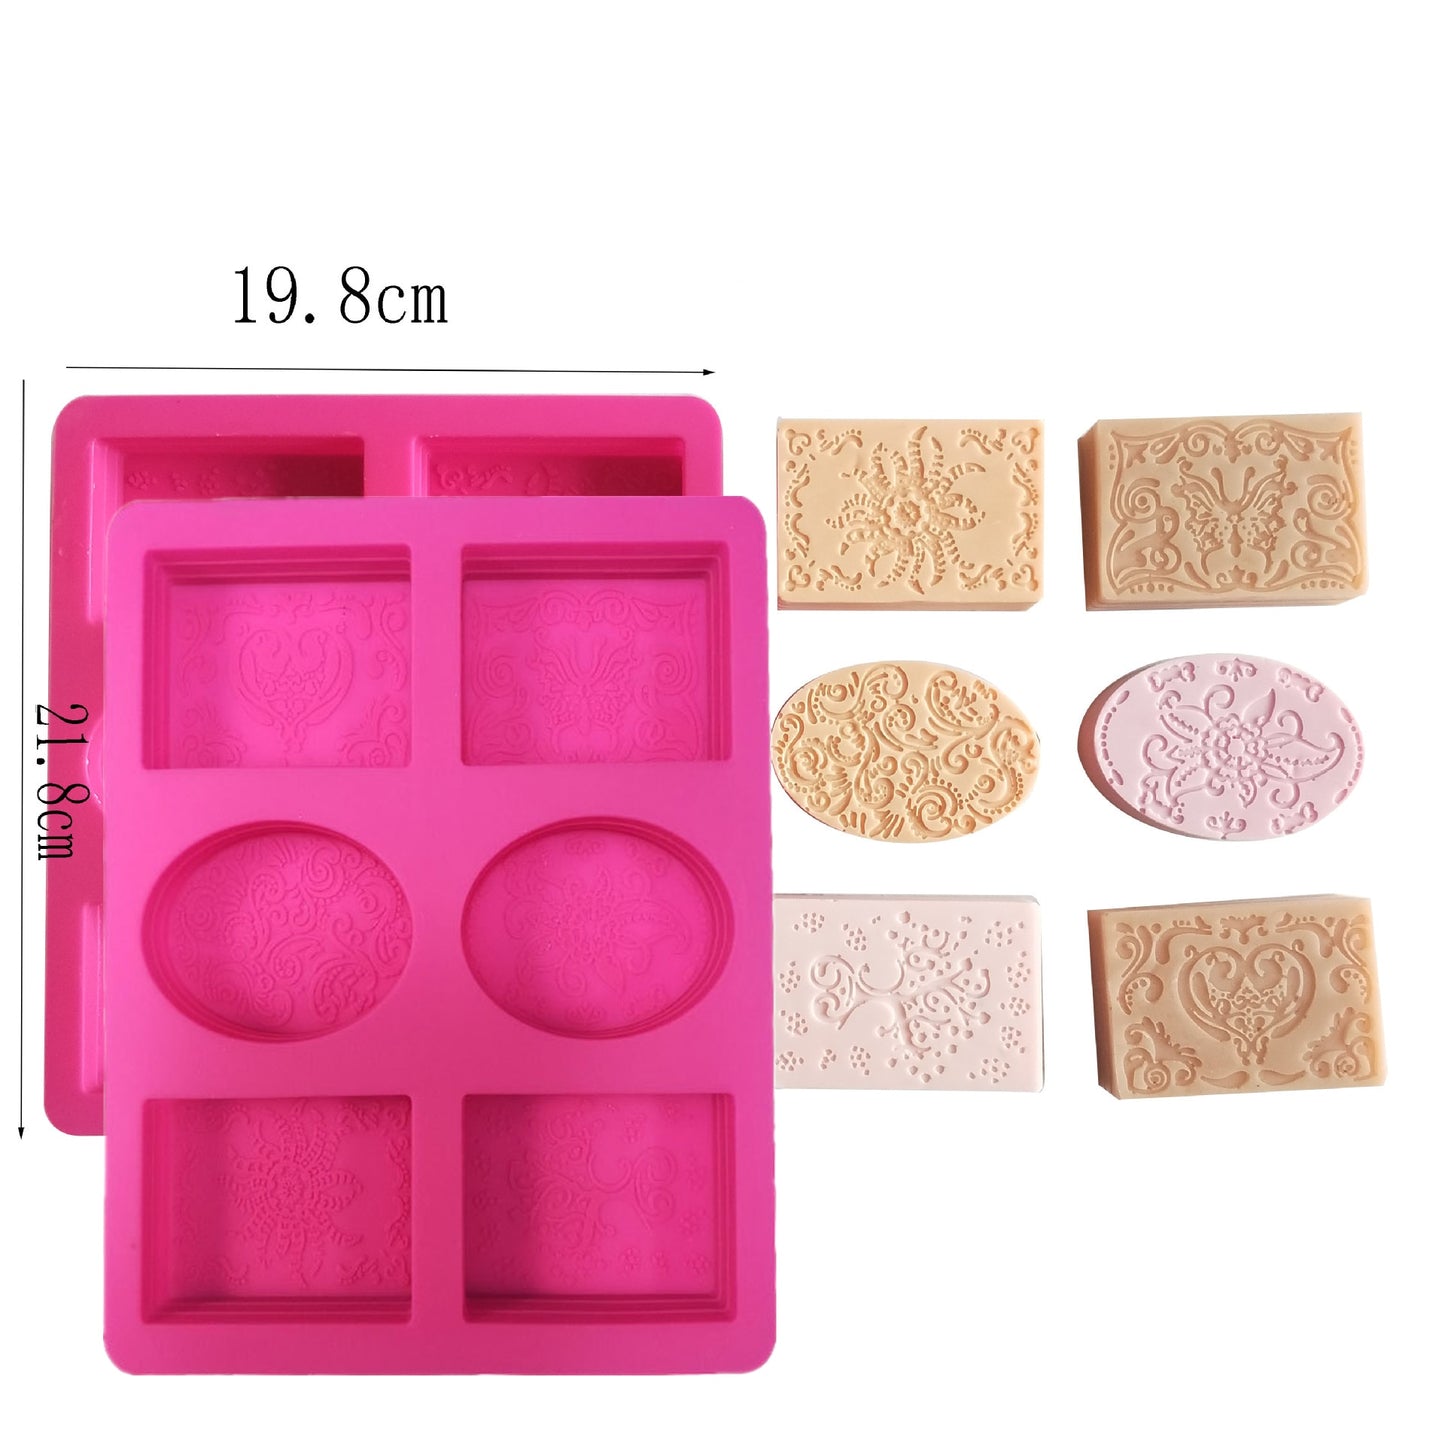 2 pc 6-cavity Silicone Soap Mold